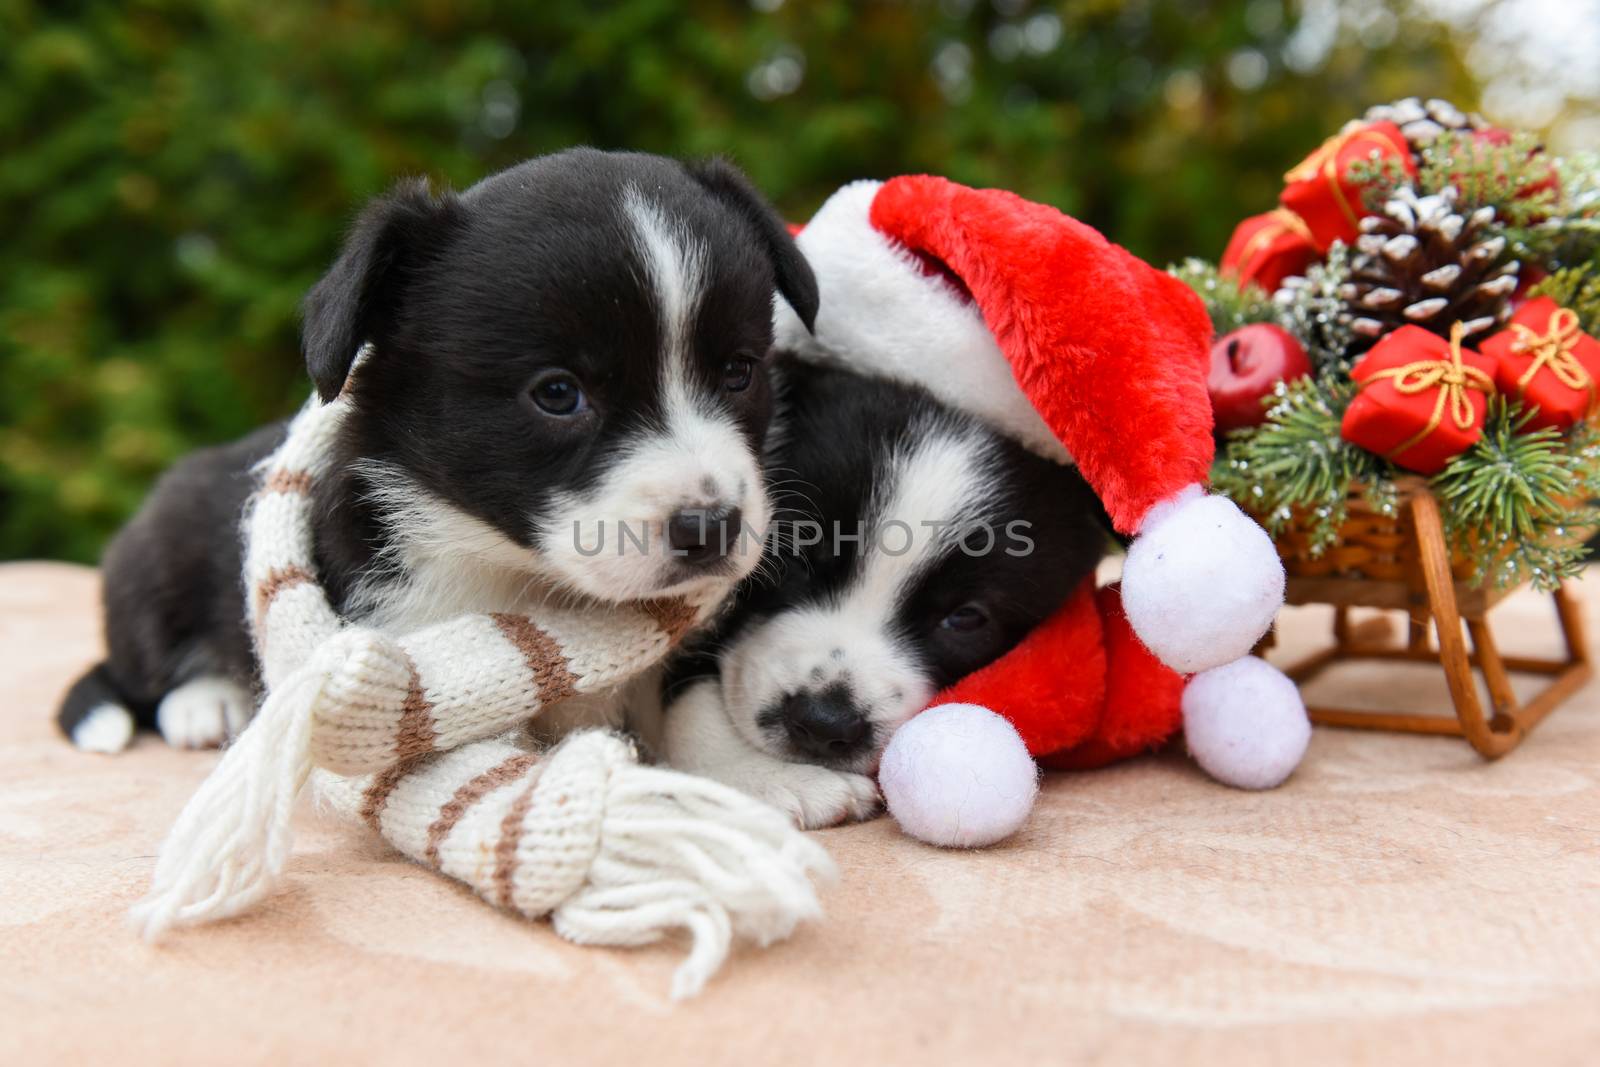 Welsh corgi pembroke puppies dogs in santa hat by infinityyy